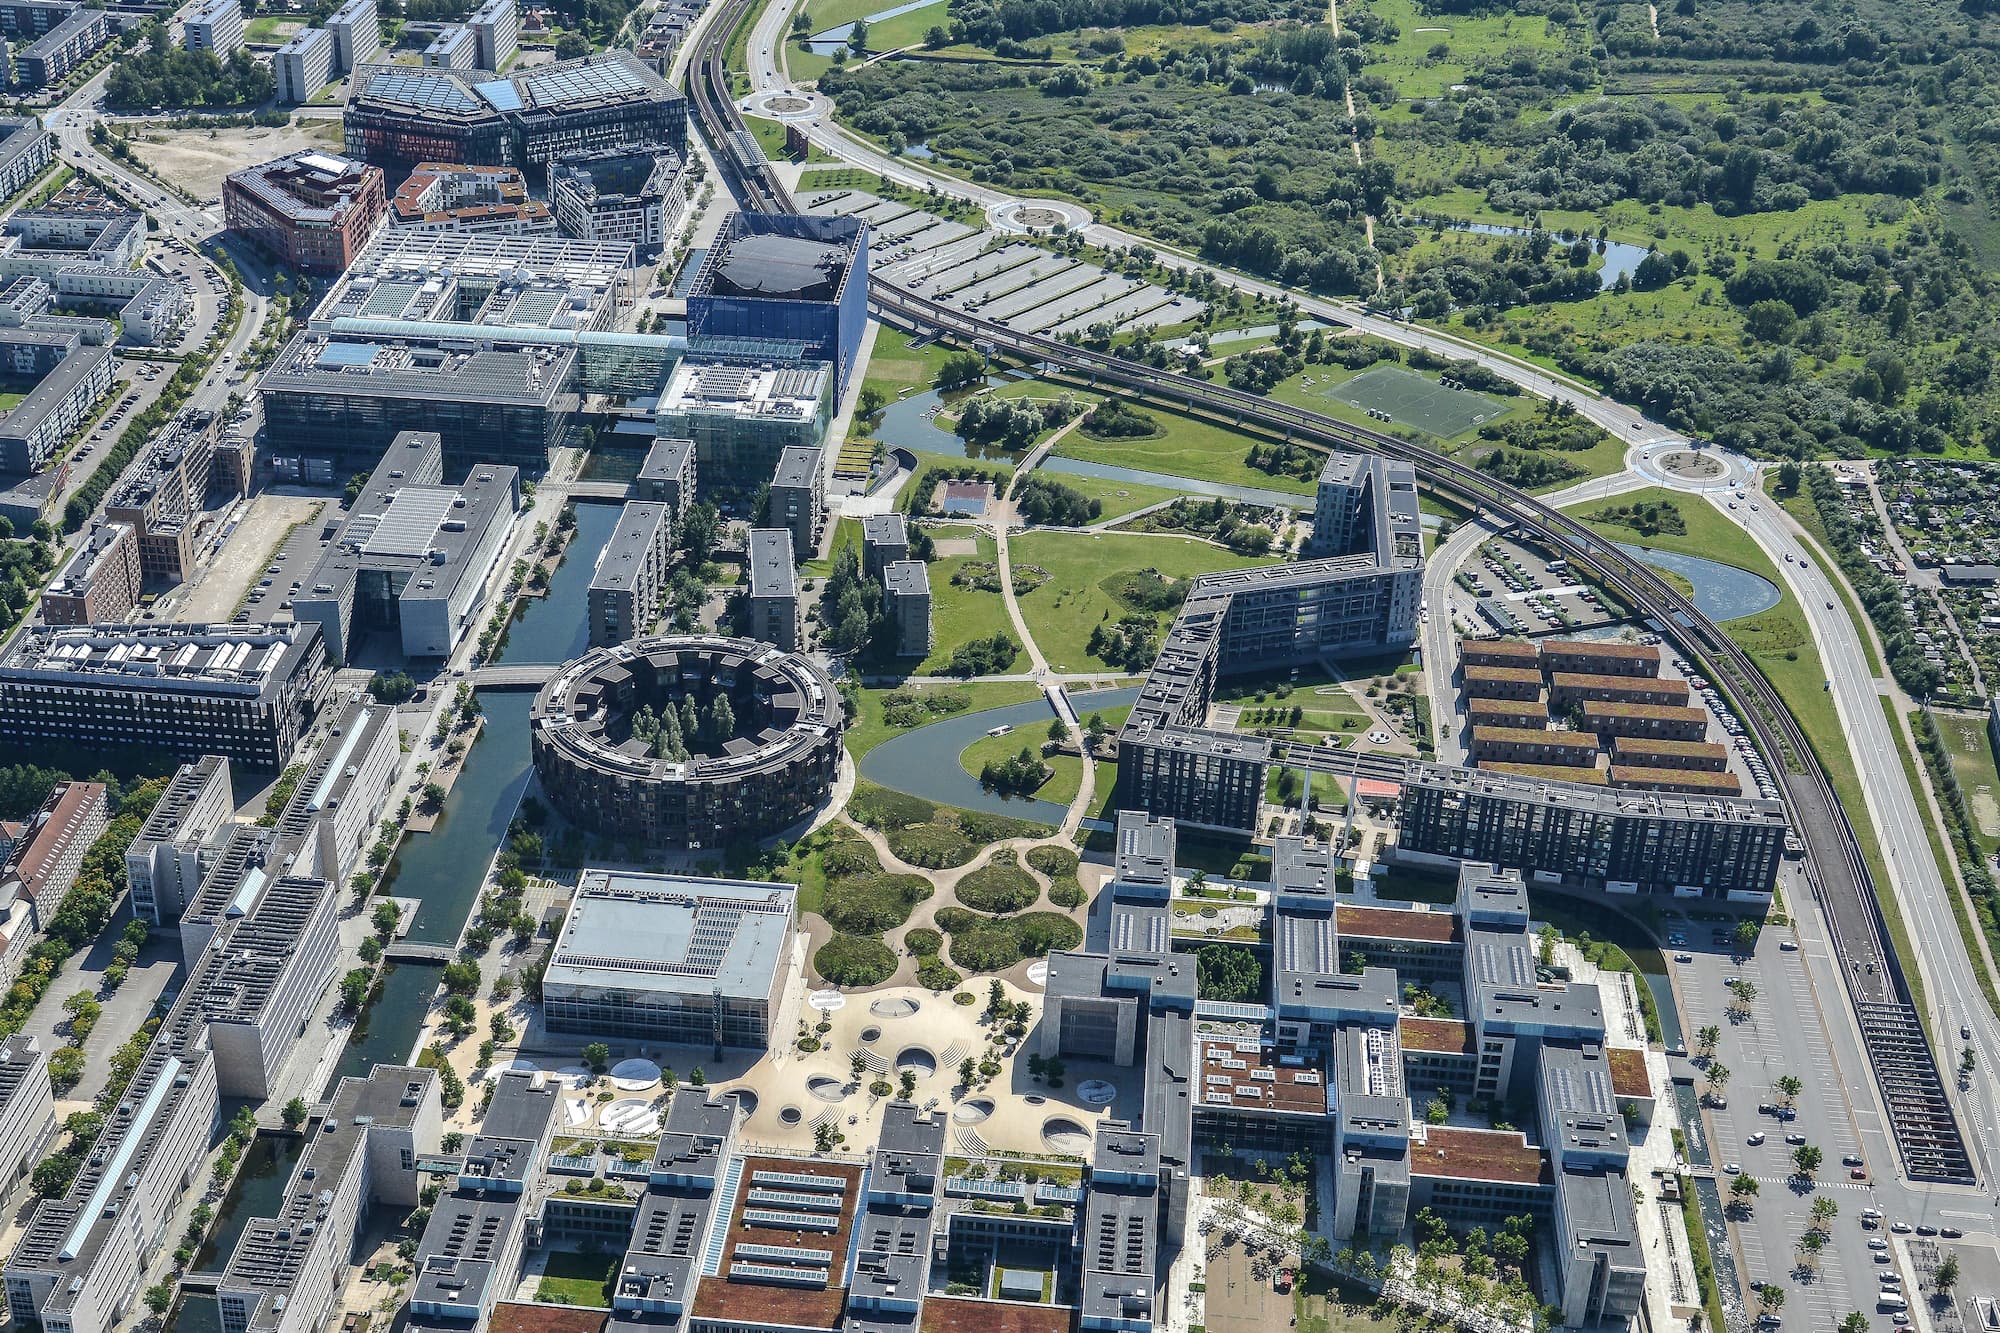 Luftfoto af Ørestad Nord fra 2021. Parken Grønningen fremstår som kvarterets grønne centrum.